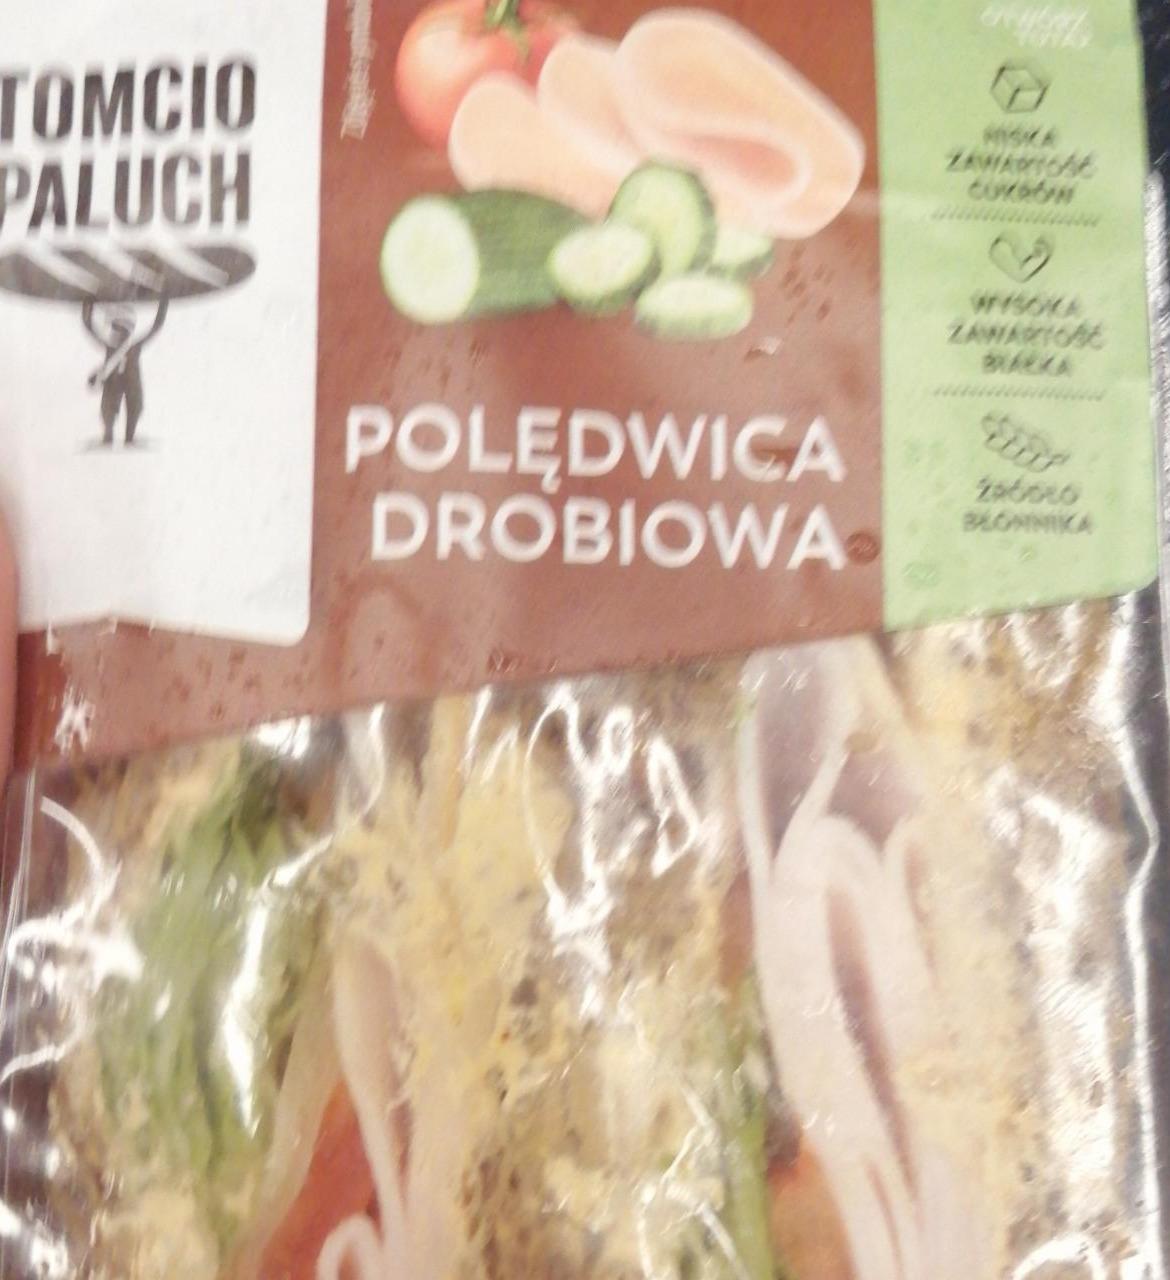 Фото - Kanapka polędwica drobiowa dressingiem i warzywami Tomcio Paluch